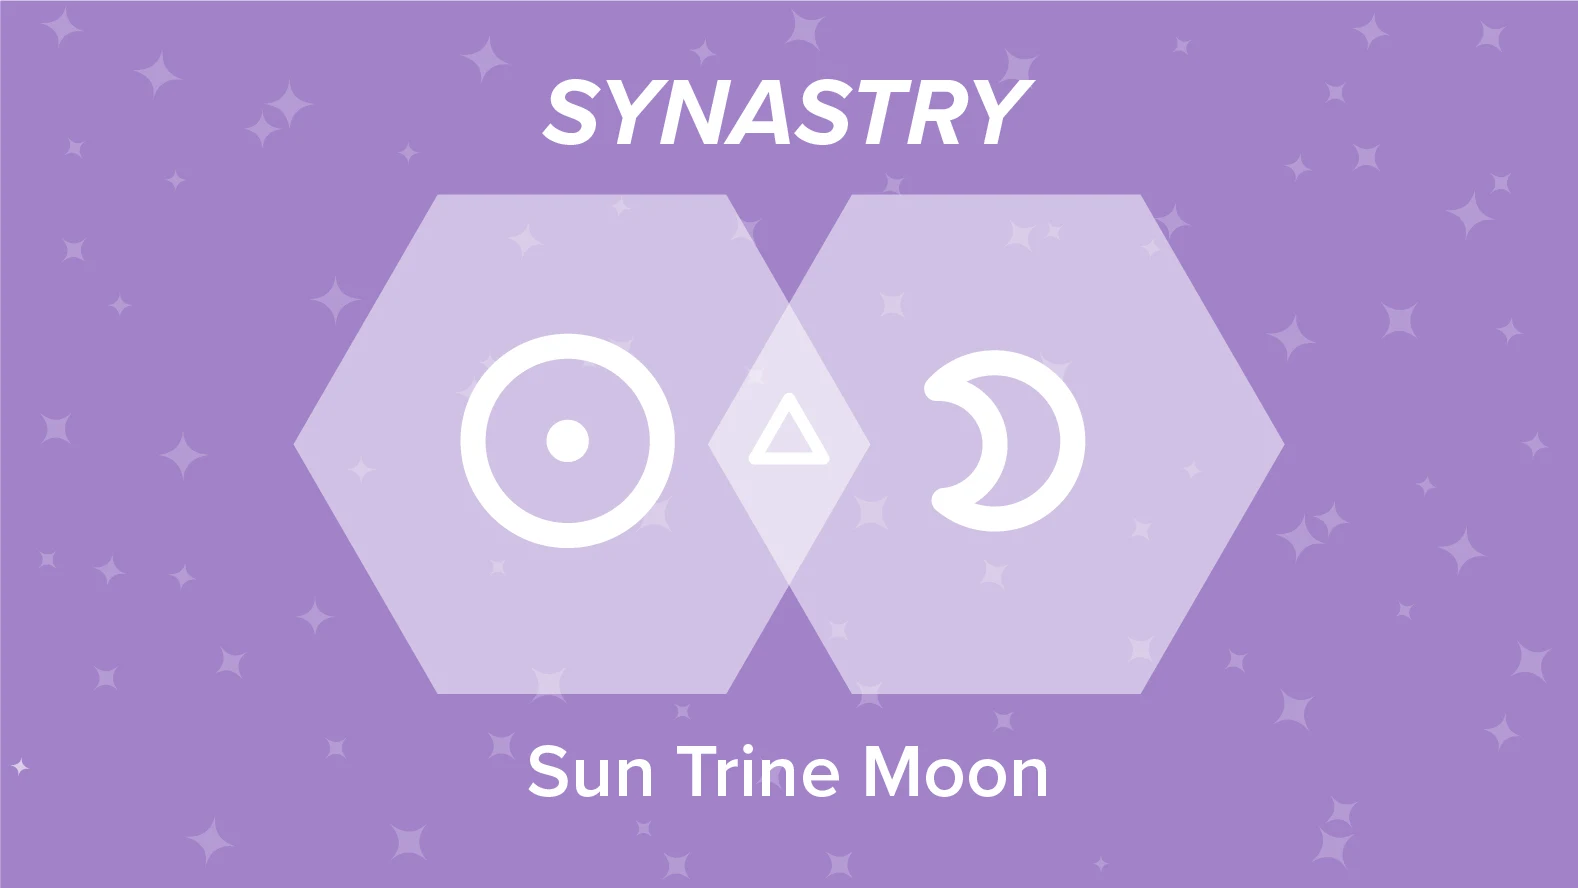 Sun Trine Moon Synastry